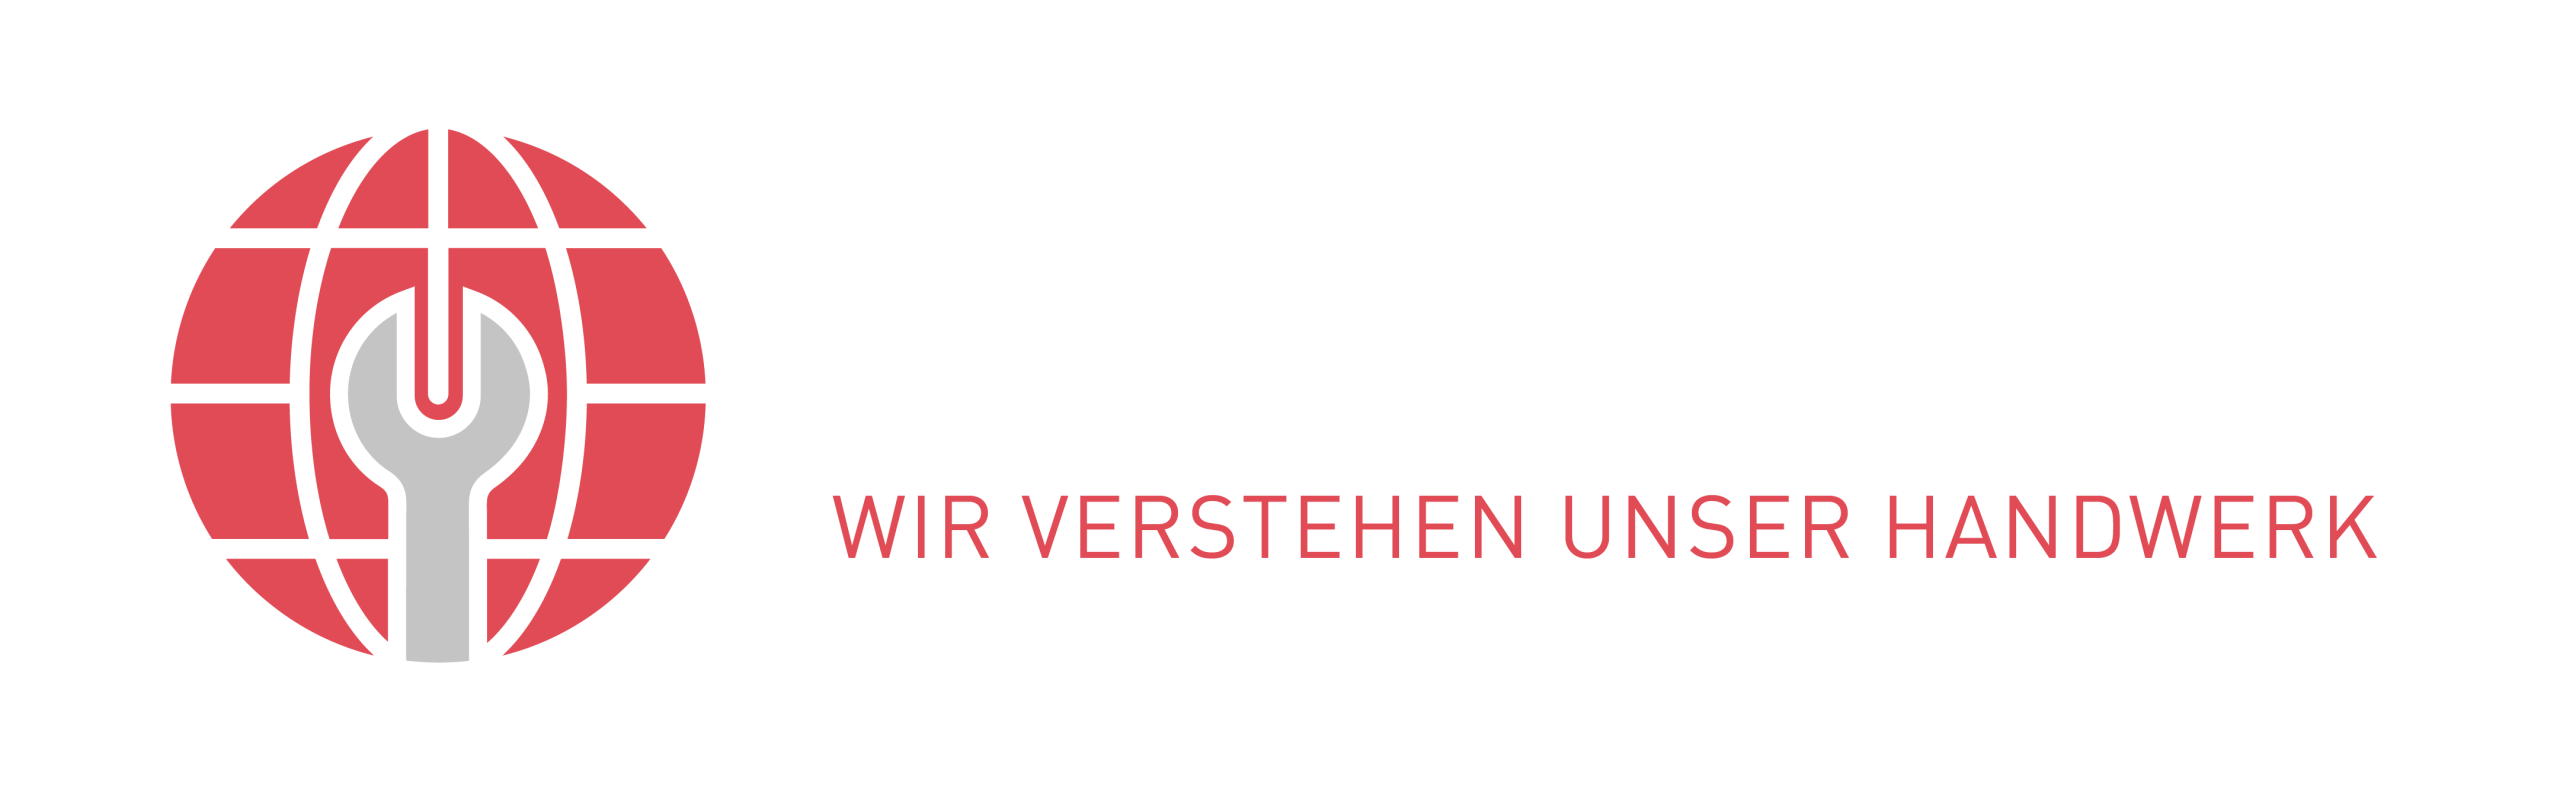 Webchaniker